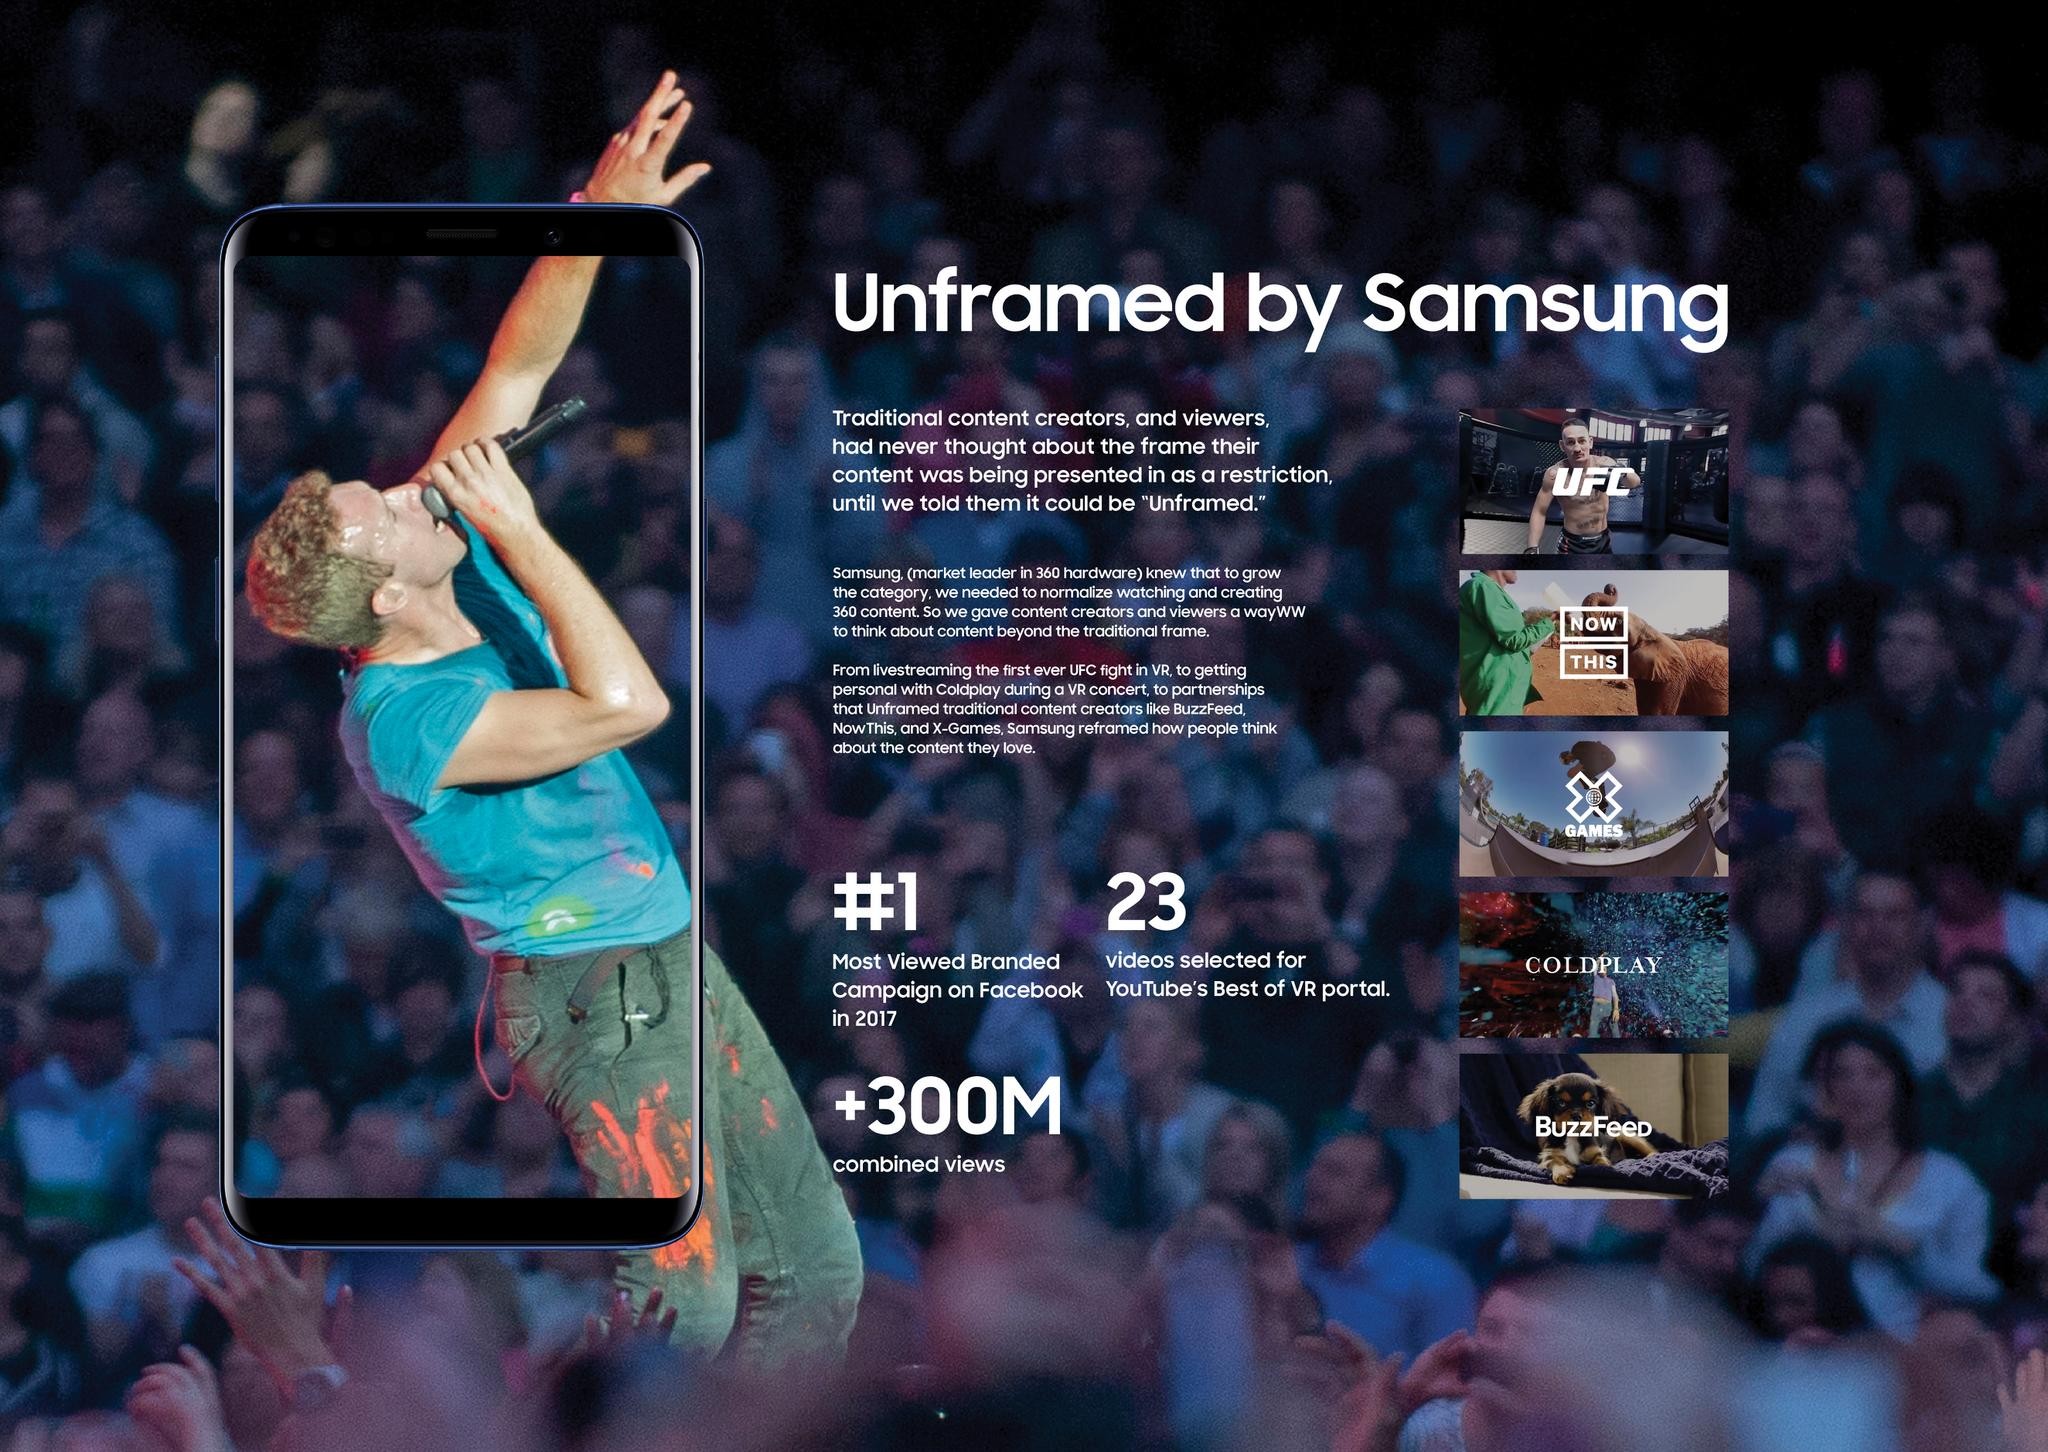 Unframed by Samsung